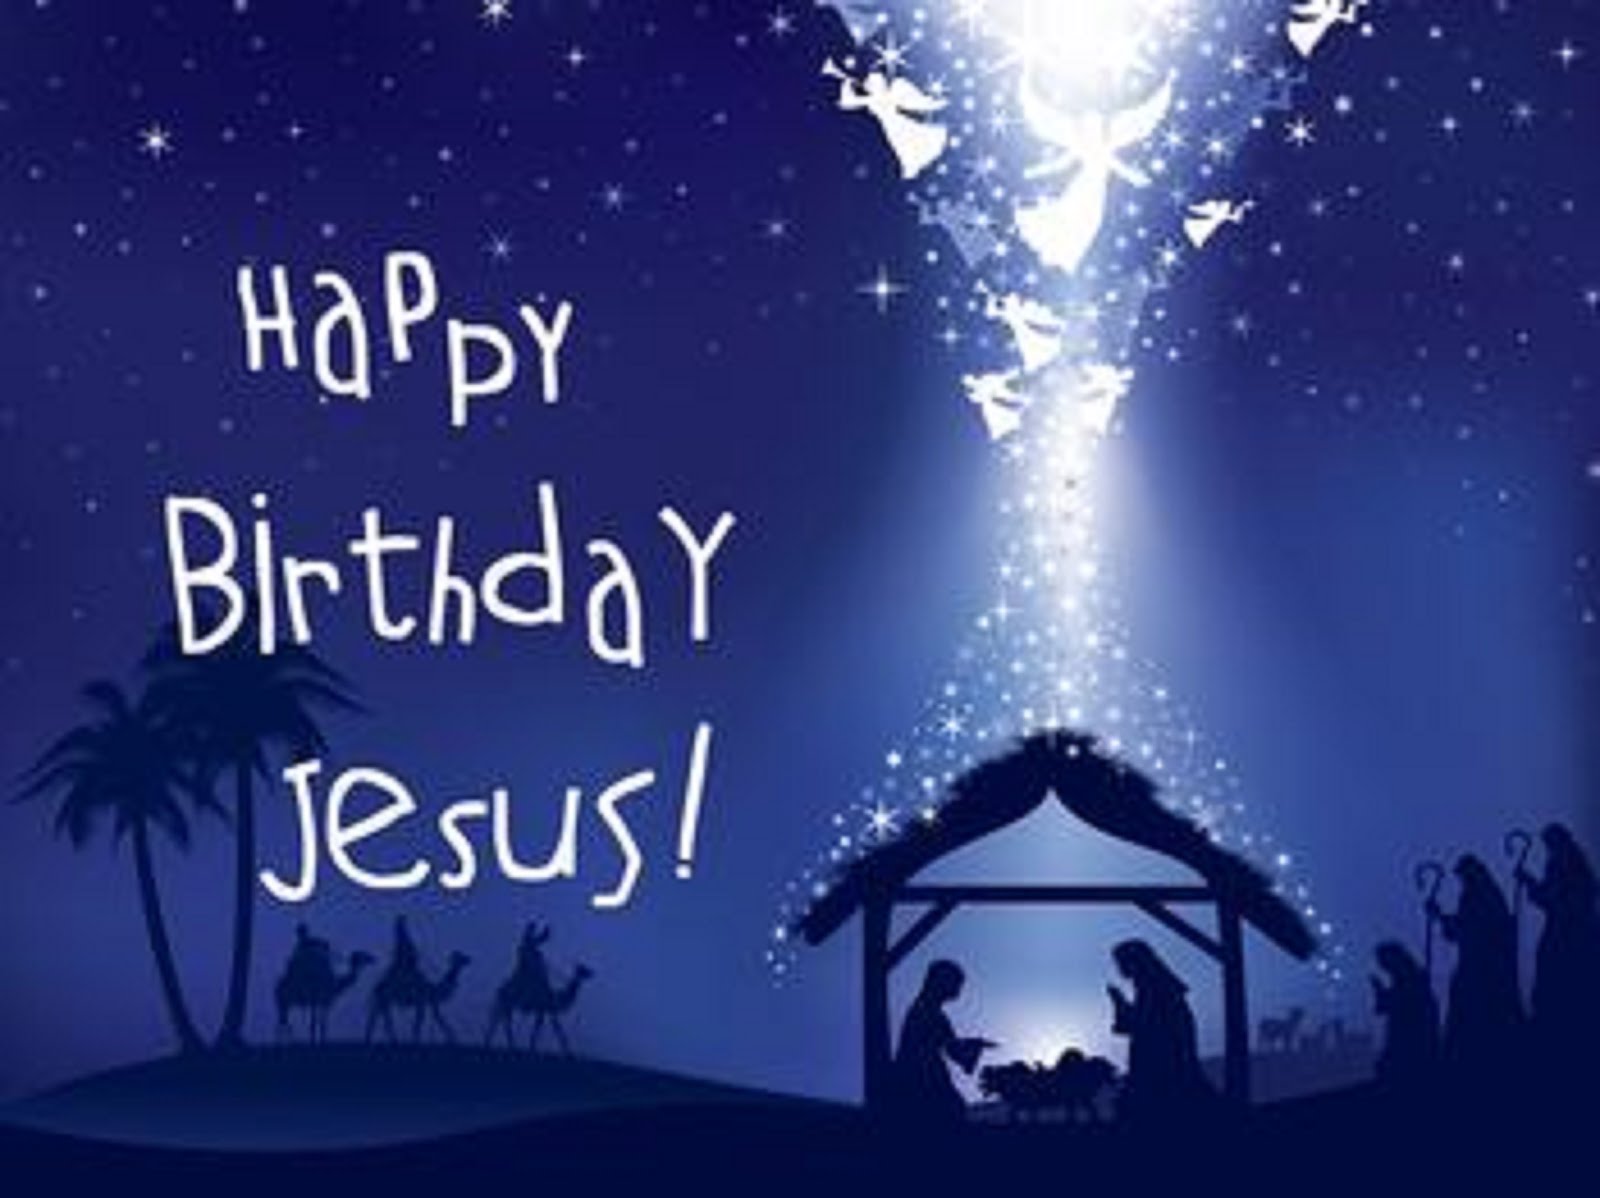 HAPPY BIRTHDAY JESUS